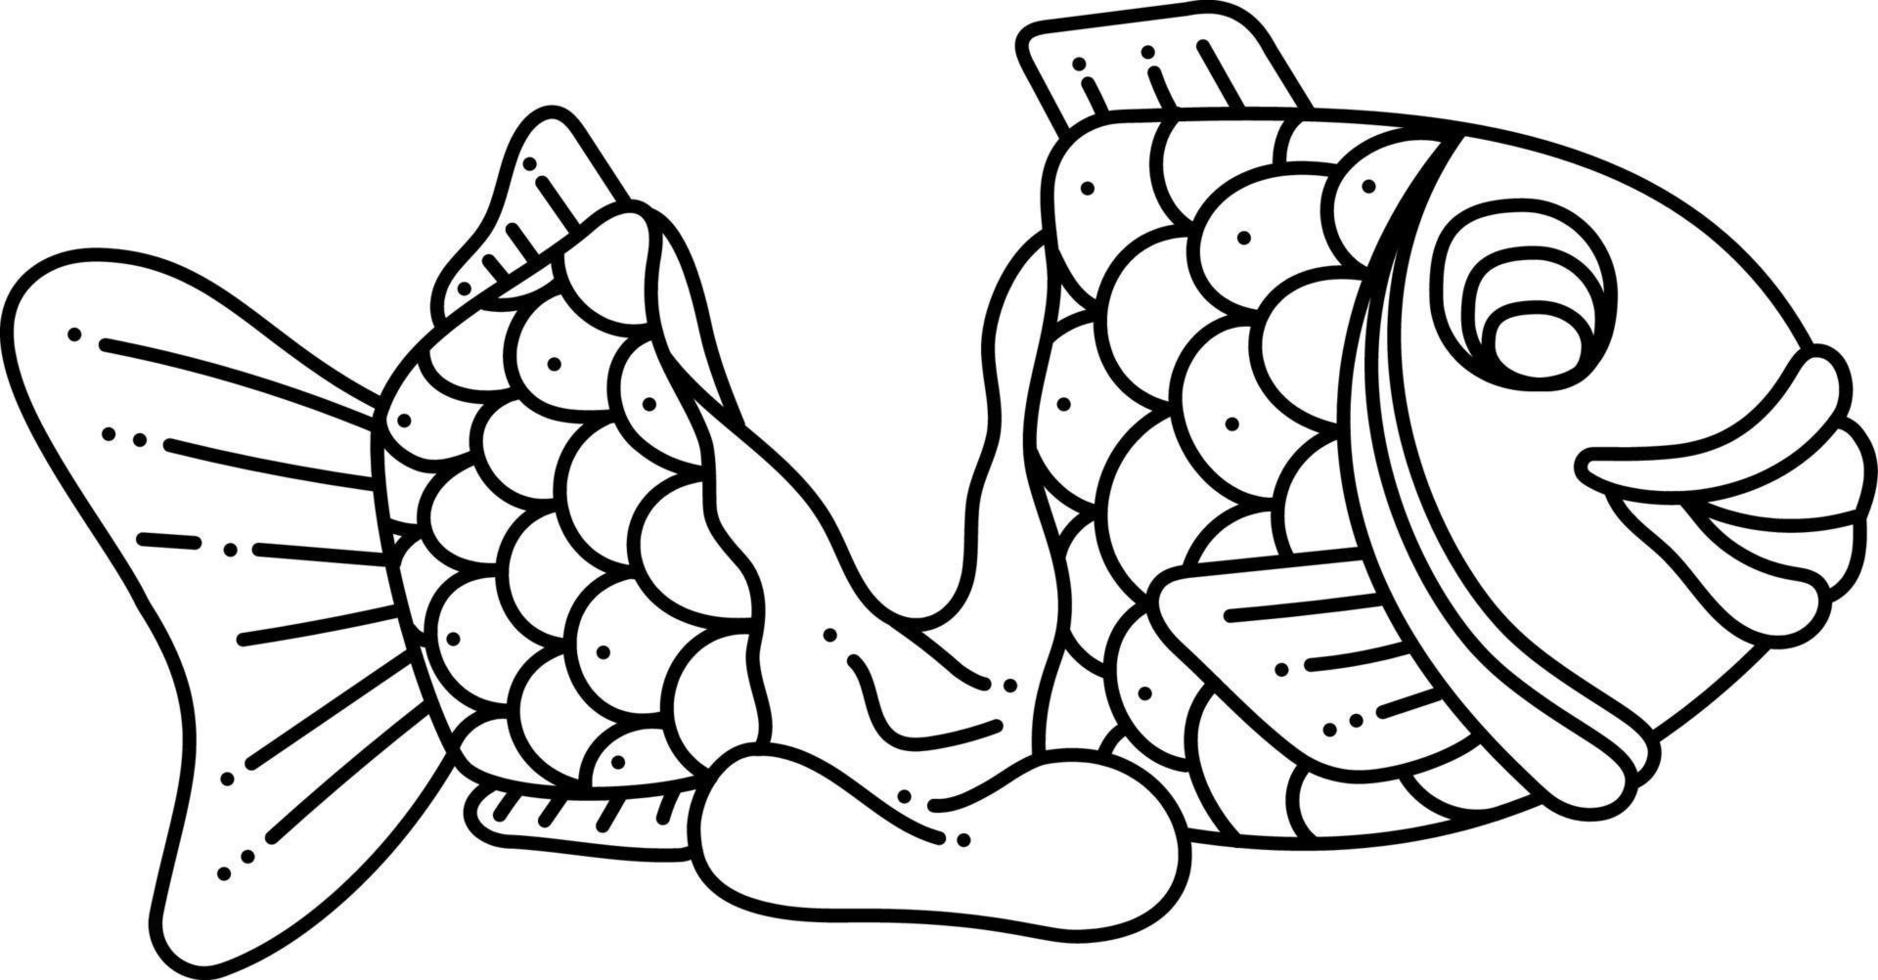 taiyaki enda doodle2. söt asiatisk ljuv fylld fisk. tecknad serie vit och svart vektor illustration.